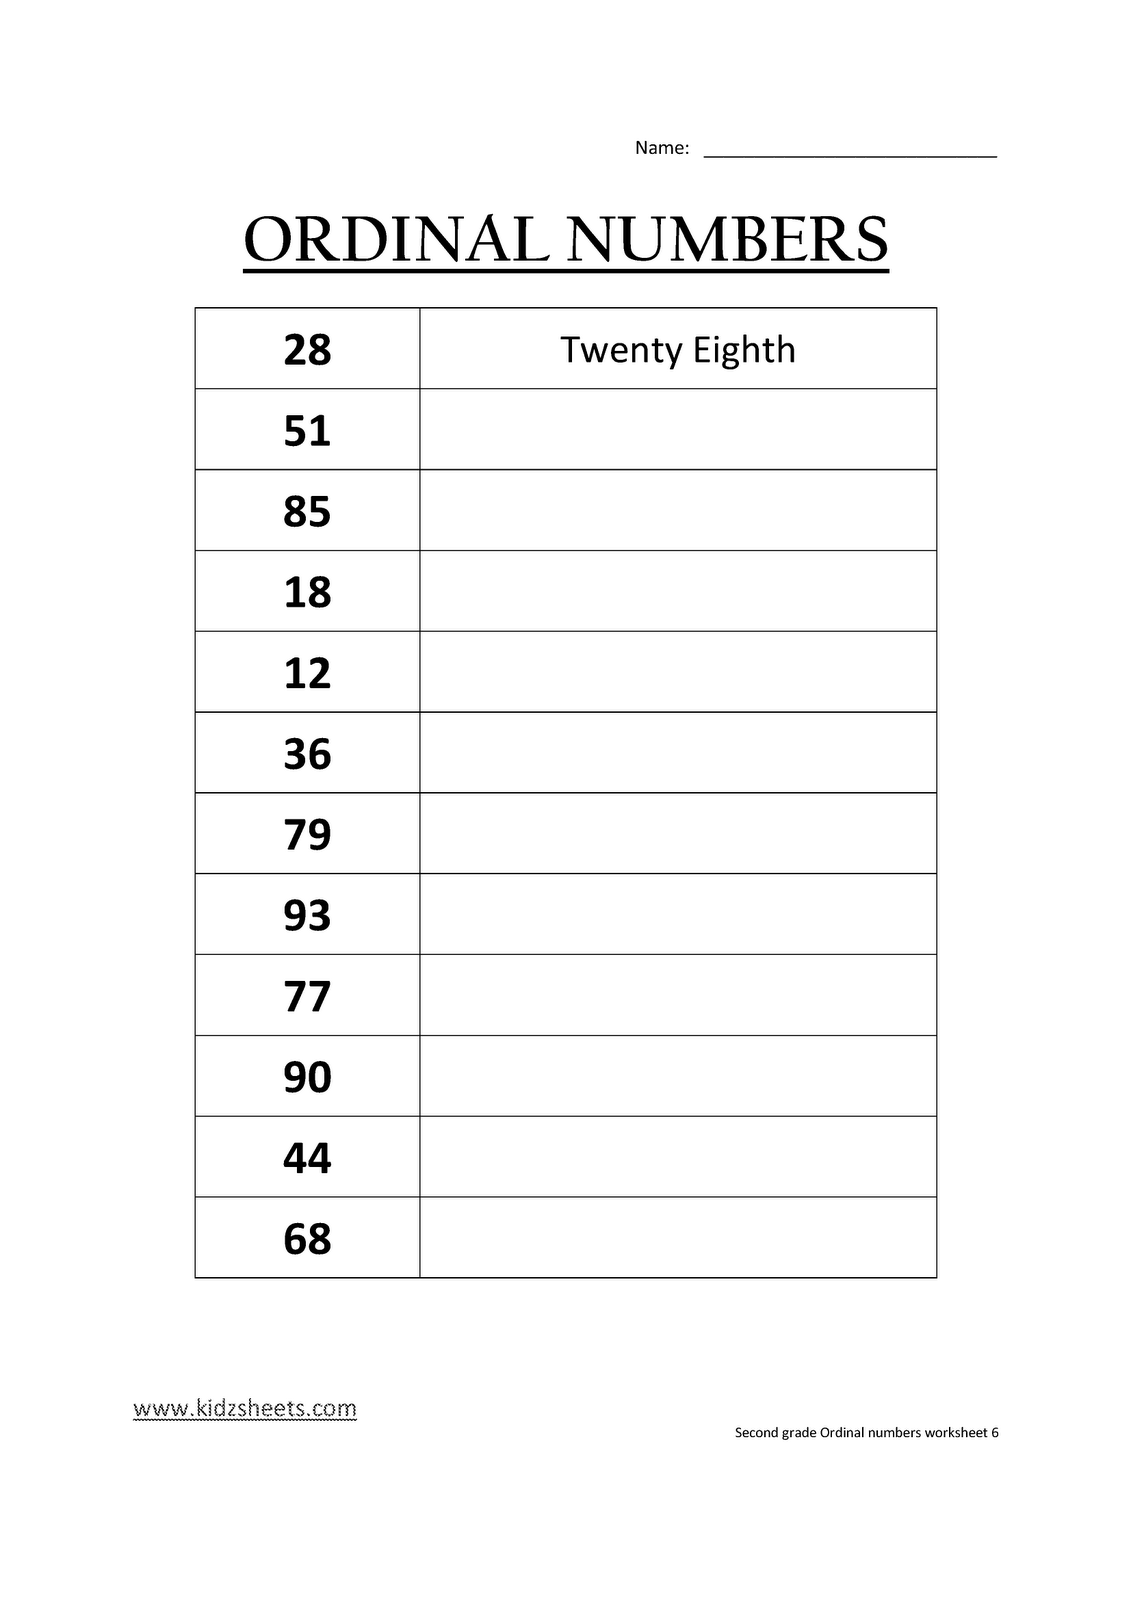 Kidz Worksheets: Second Grade Ordinal Numbers Worksheet6